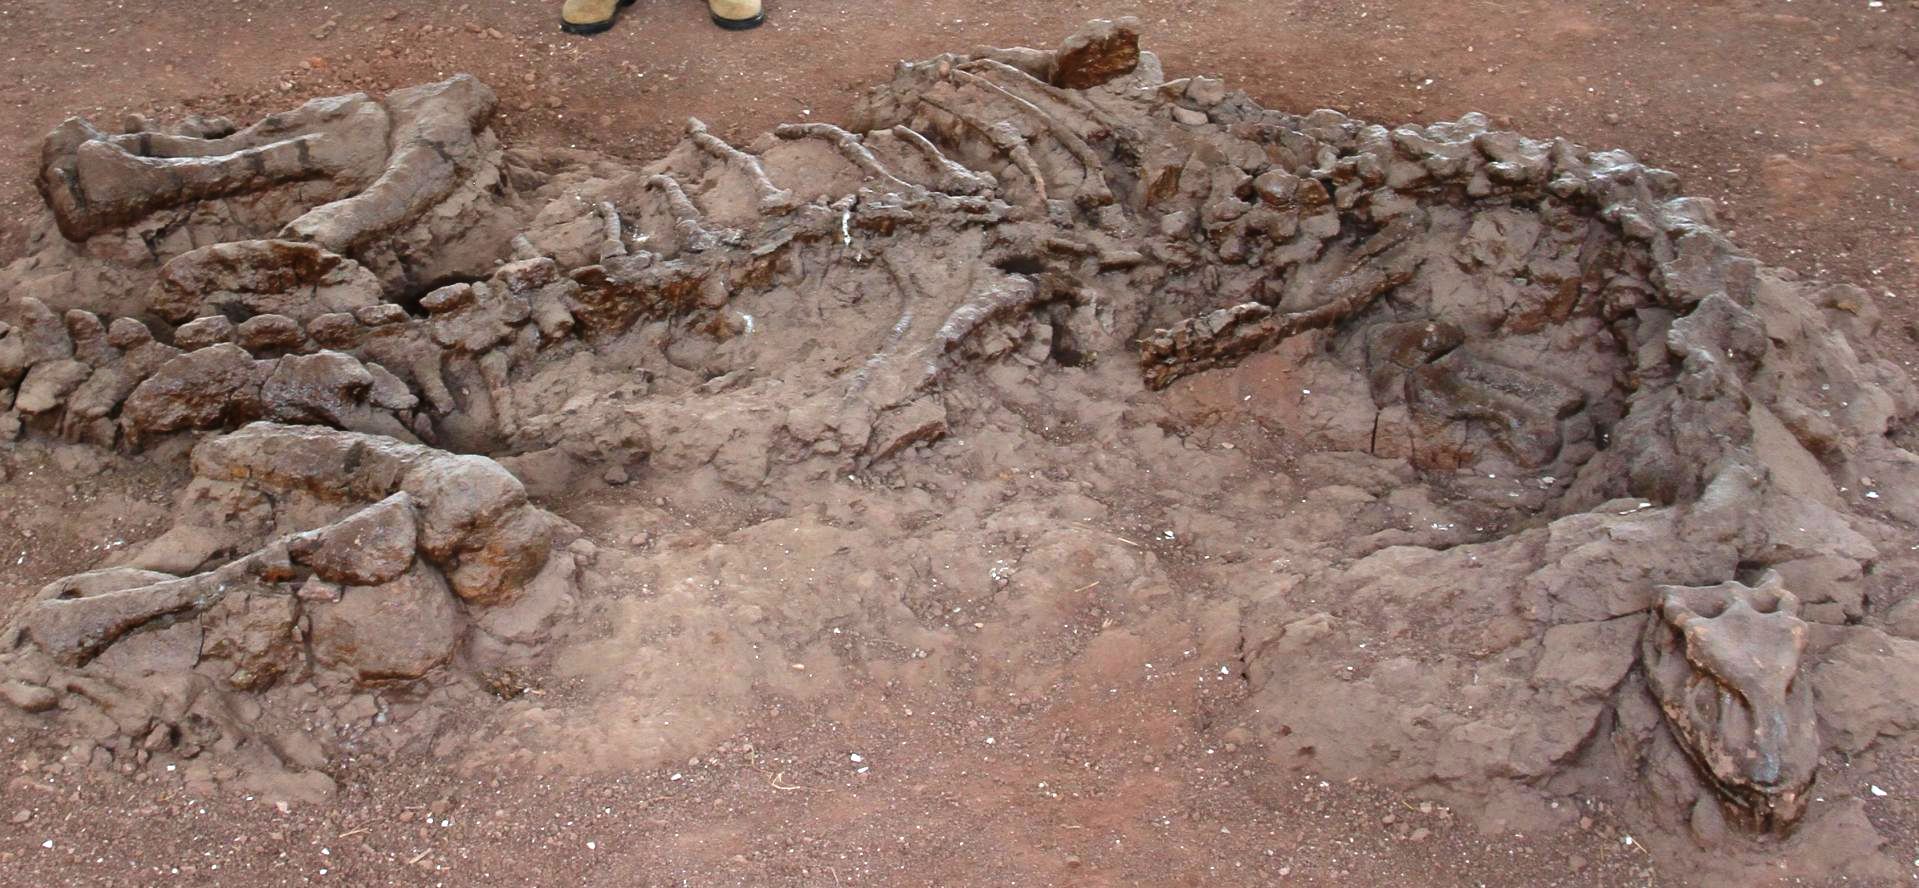 Les restes fossilisés vieux de 195 millions d'années d'un Lufengosaurus découvert dans la province du Yunnan en Chine. © Robert Reisz